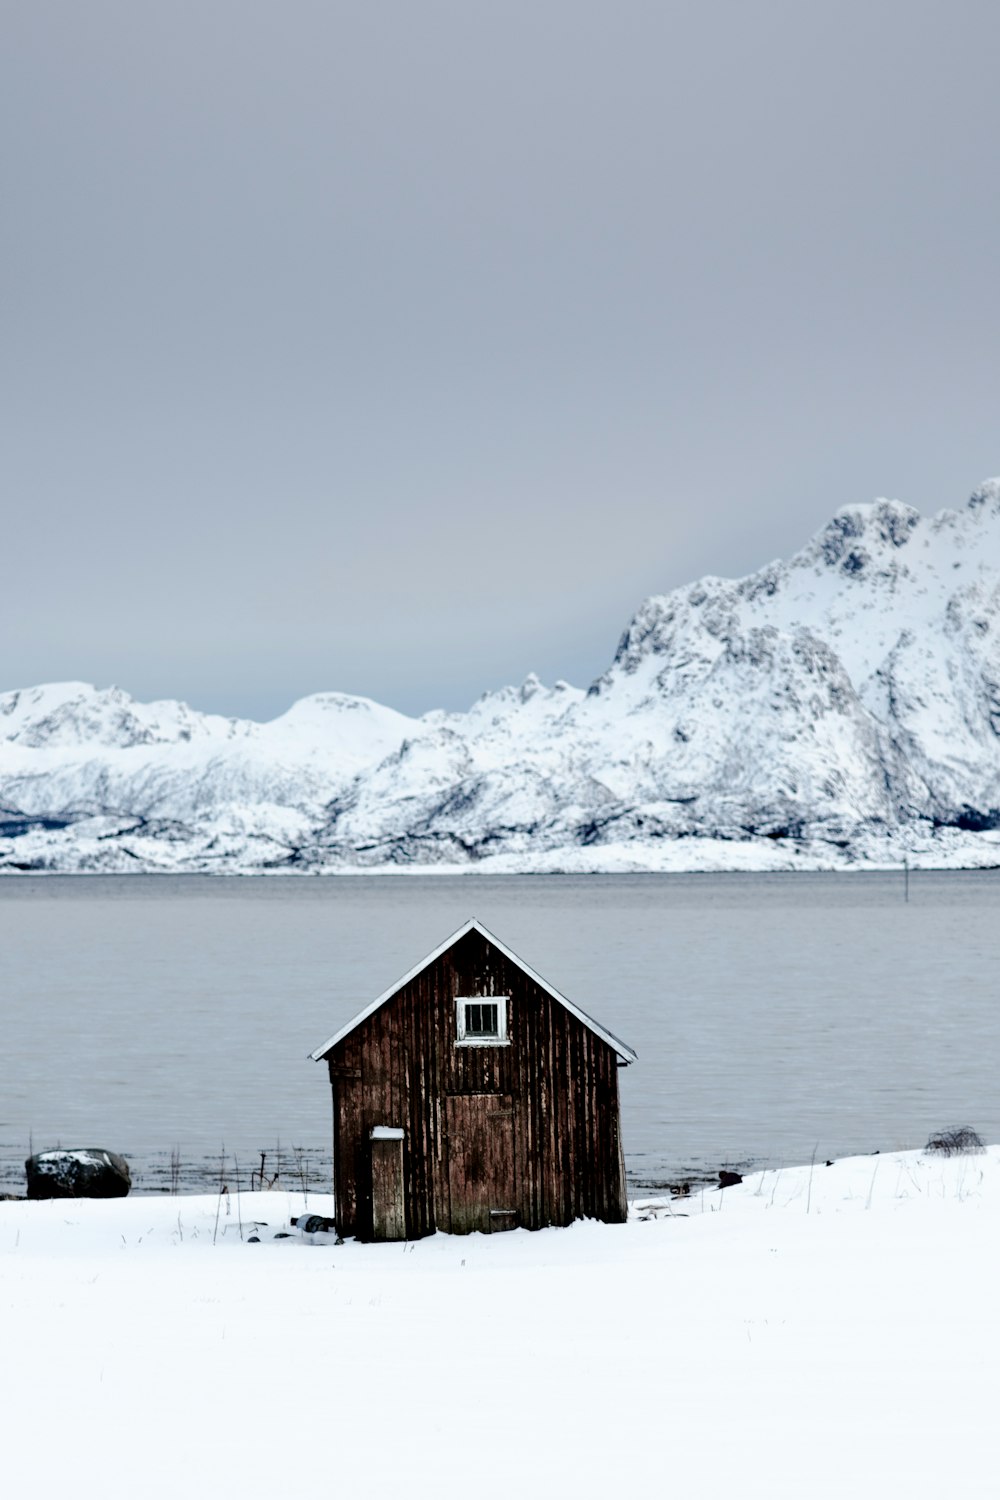 Brauner Holzschuppen in der Nähe eines Sees, umgeben von Schnee